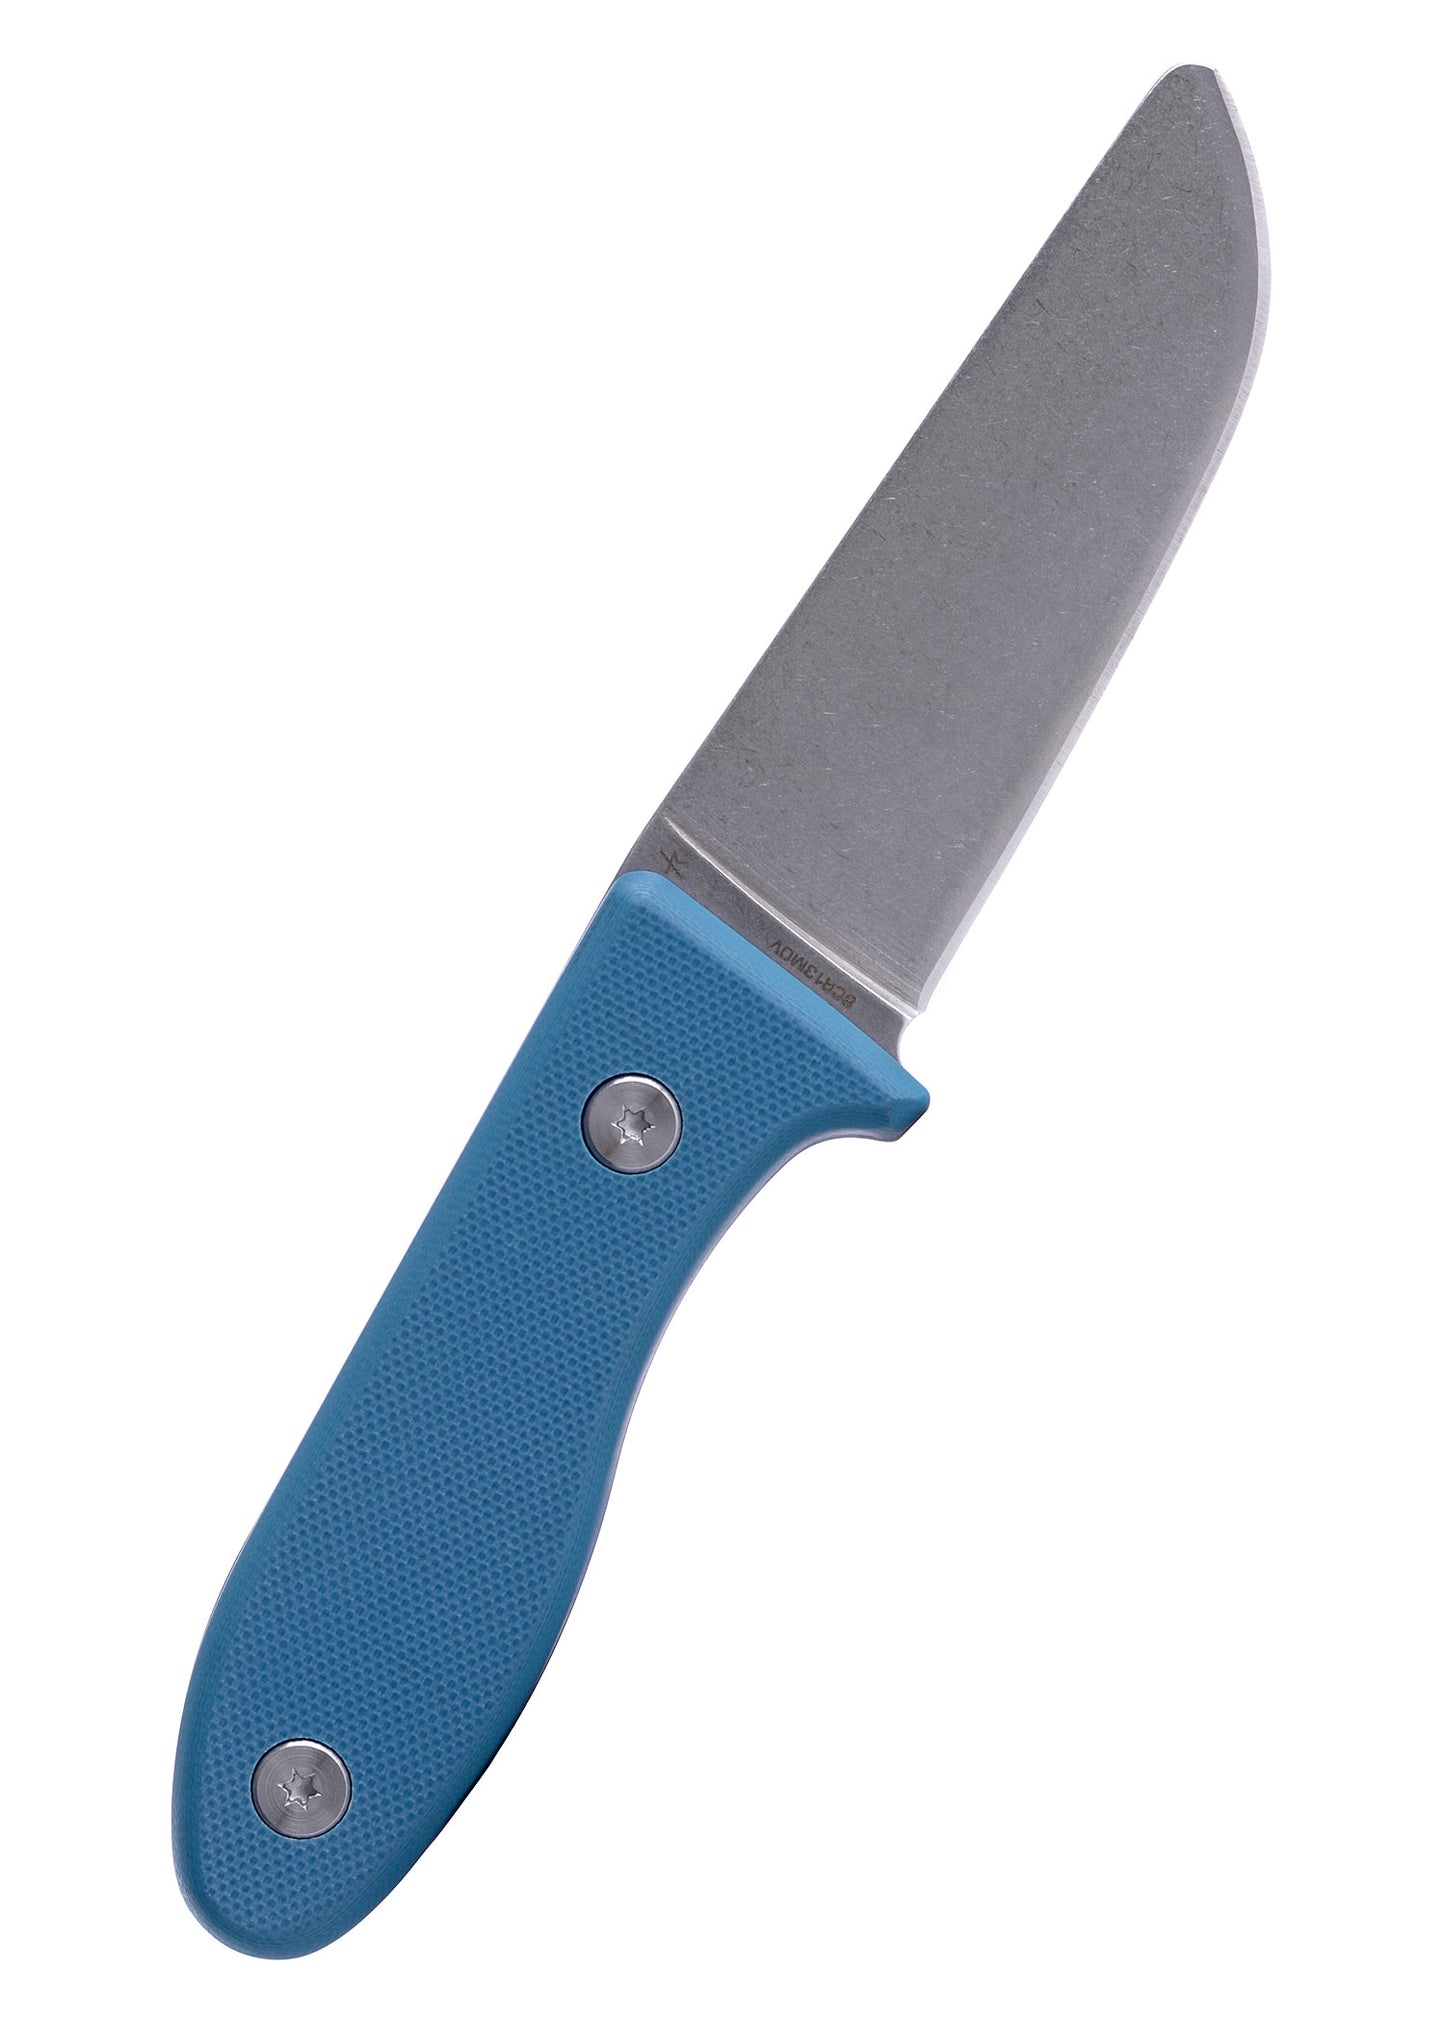 Das UNU Kinder Schnitzmesser der Firma Schnitzel mit blauem Griff